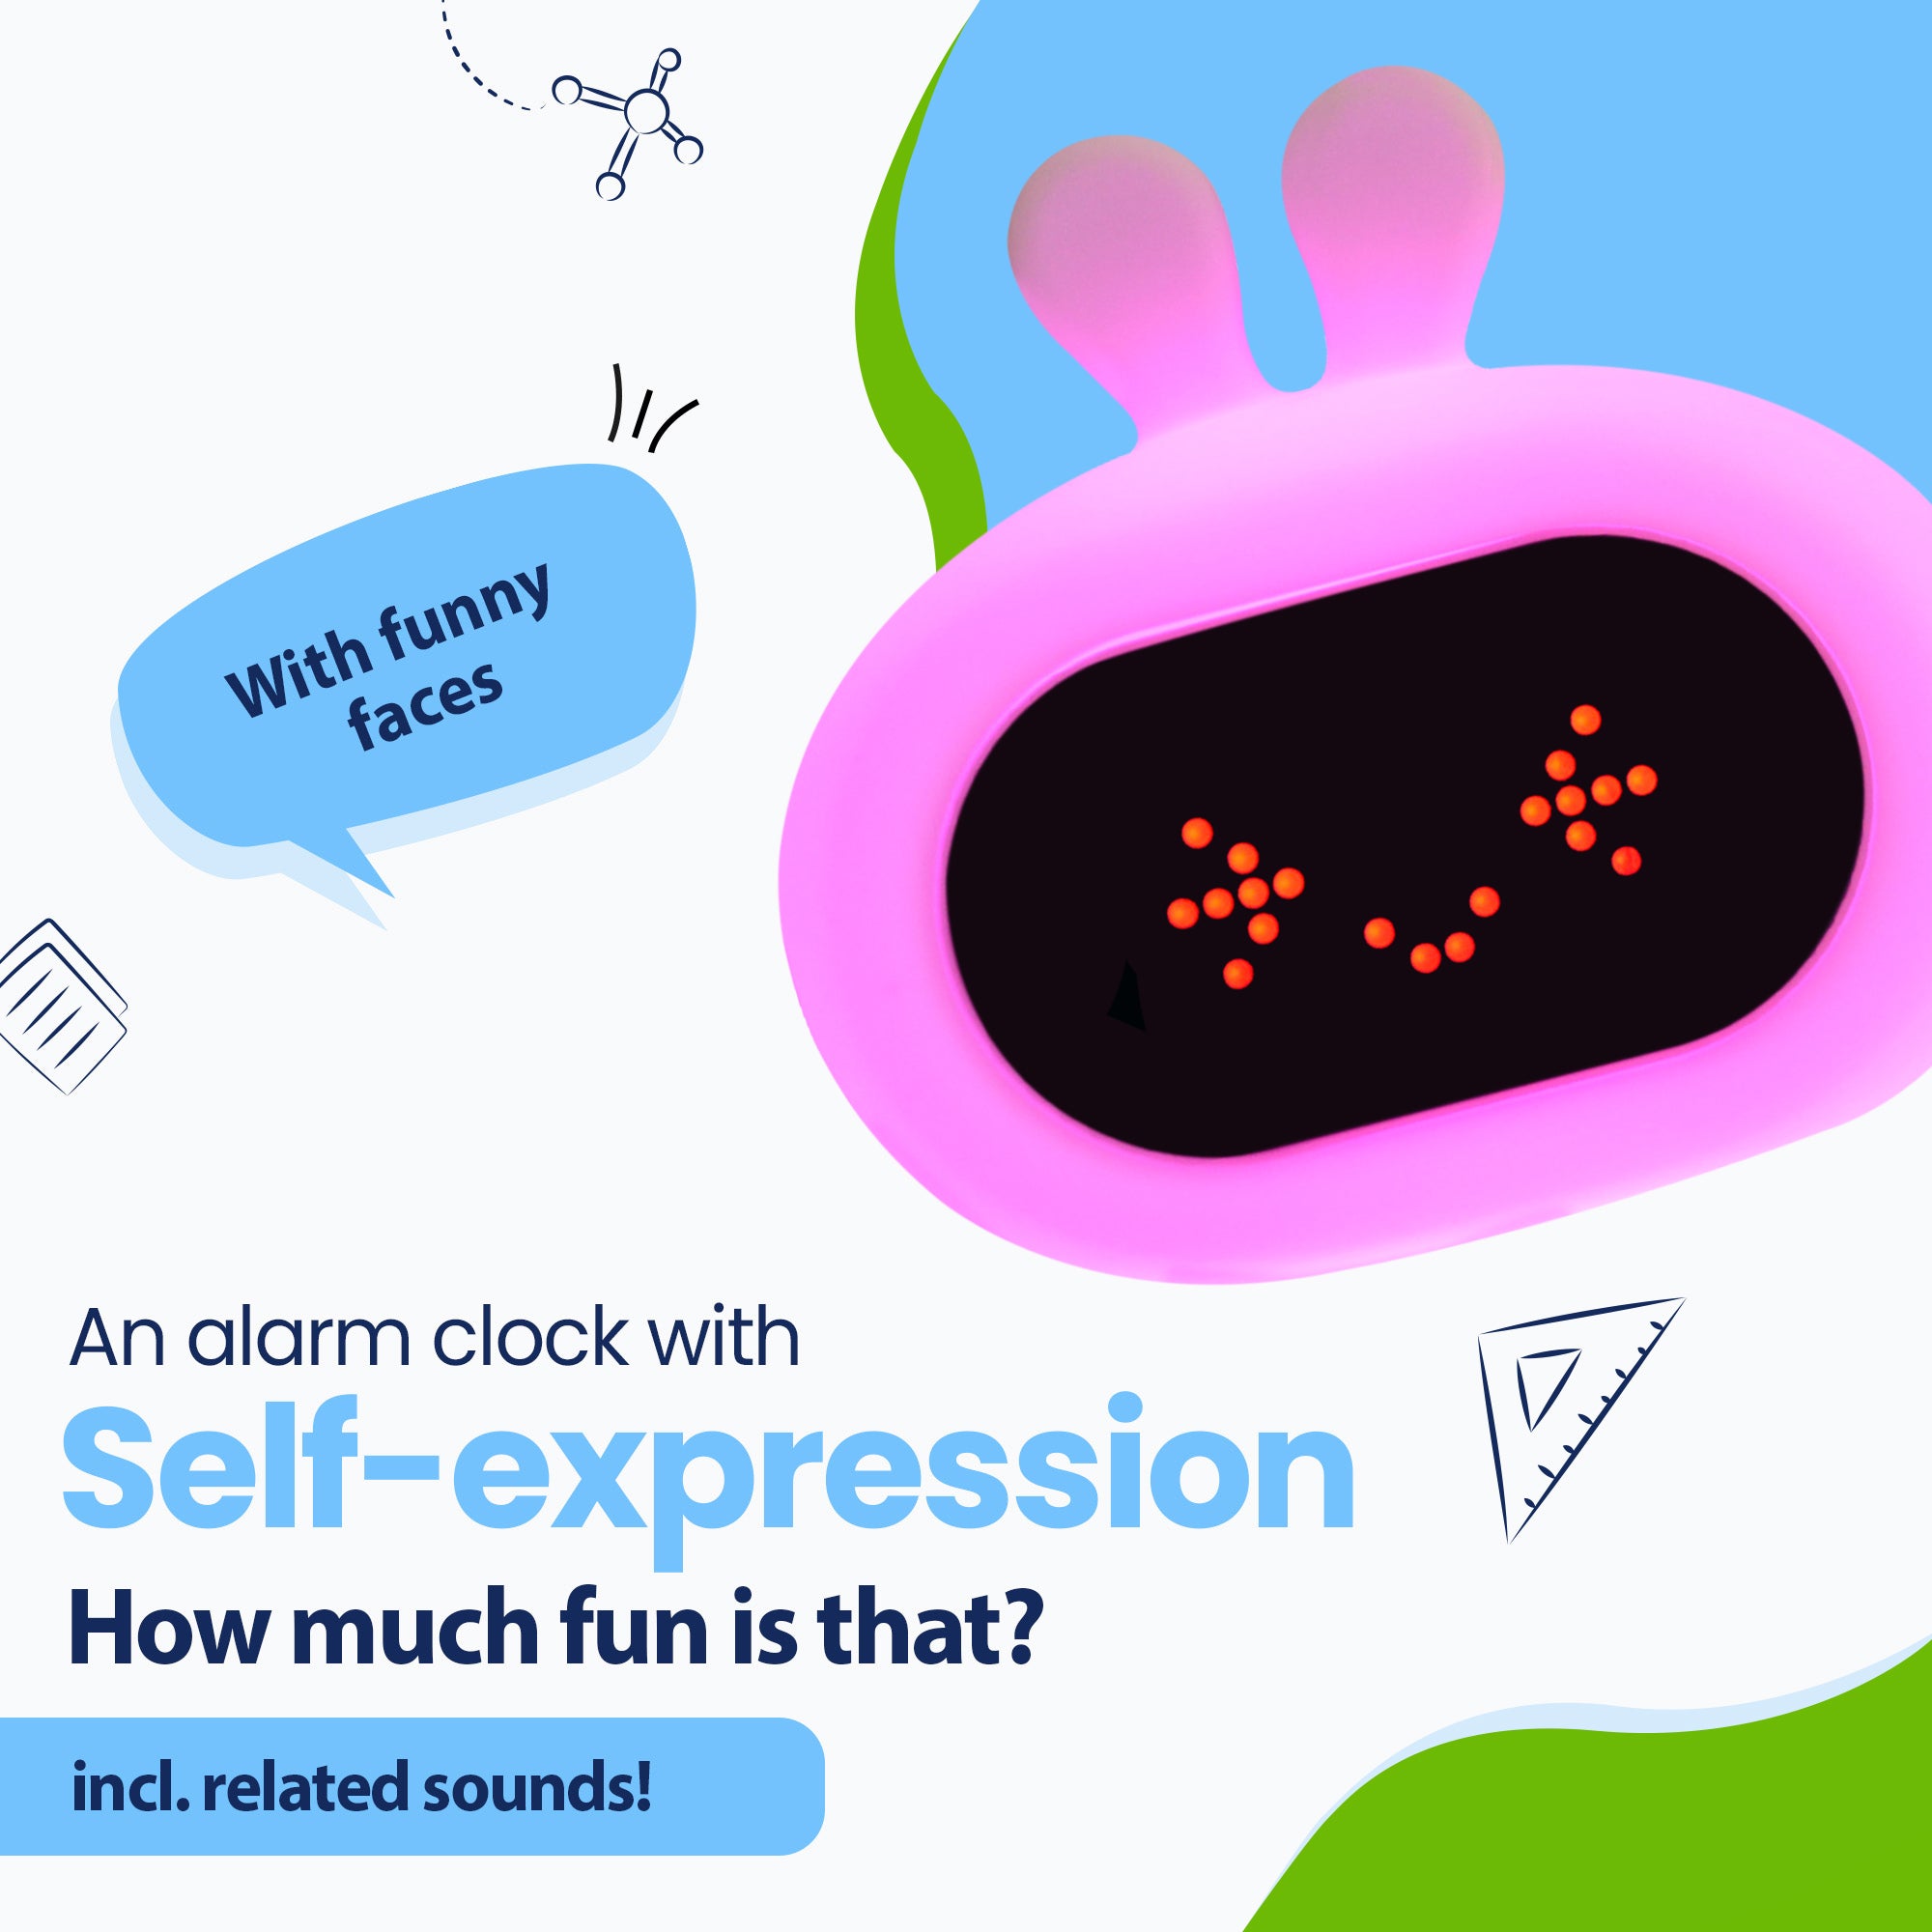 Un despertador de conejito con emojis y sonidos locos y diferentes colores de luz